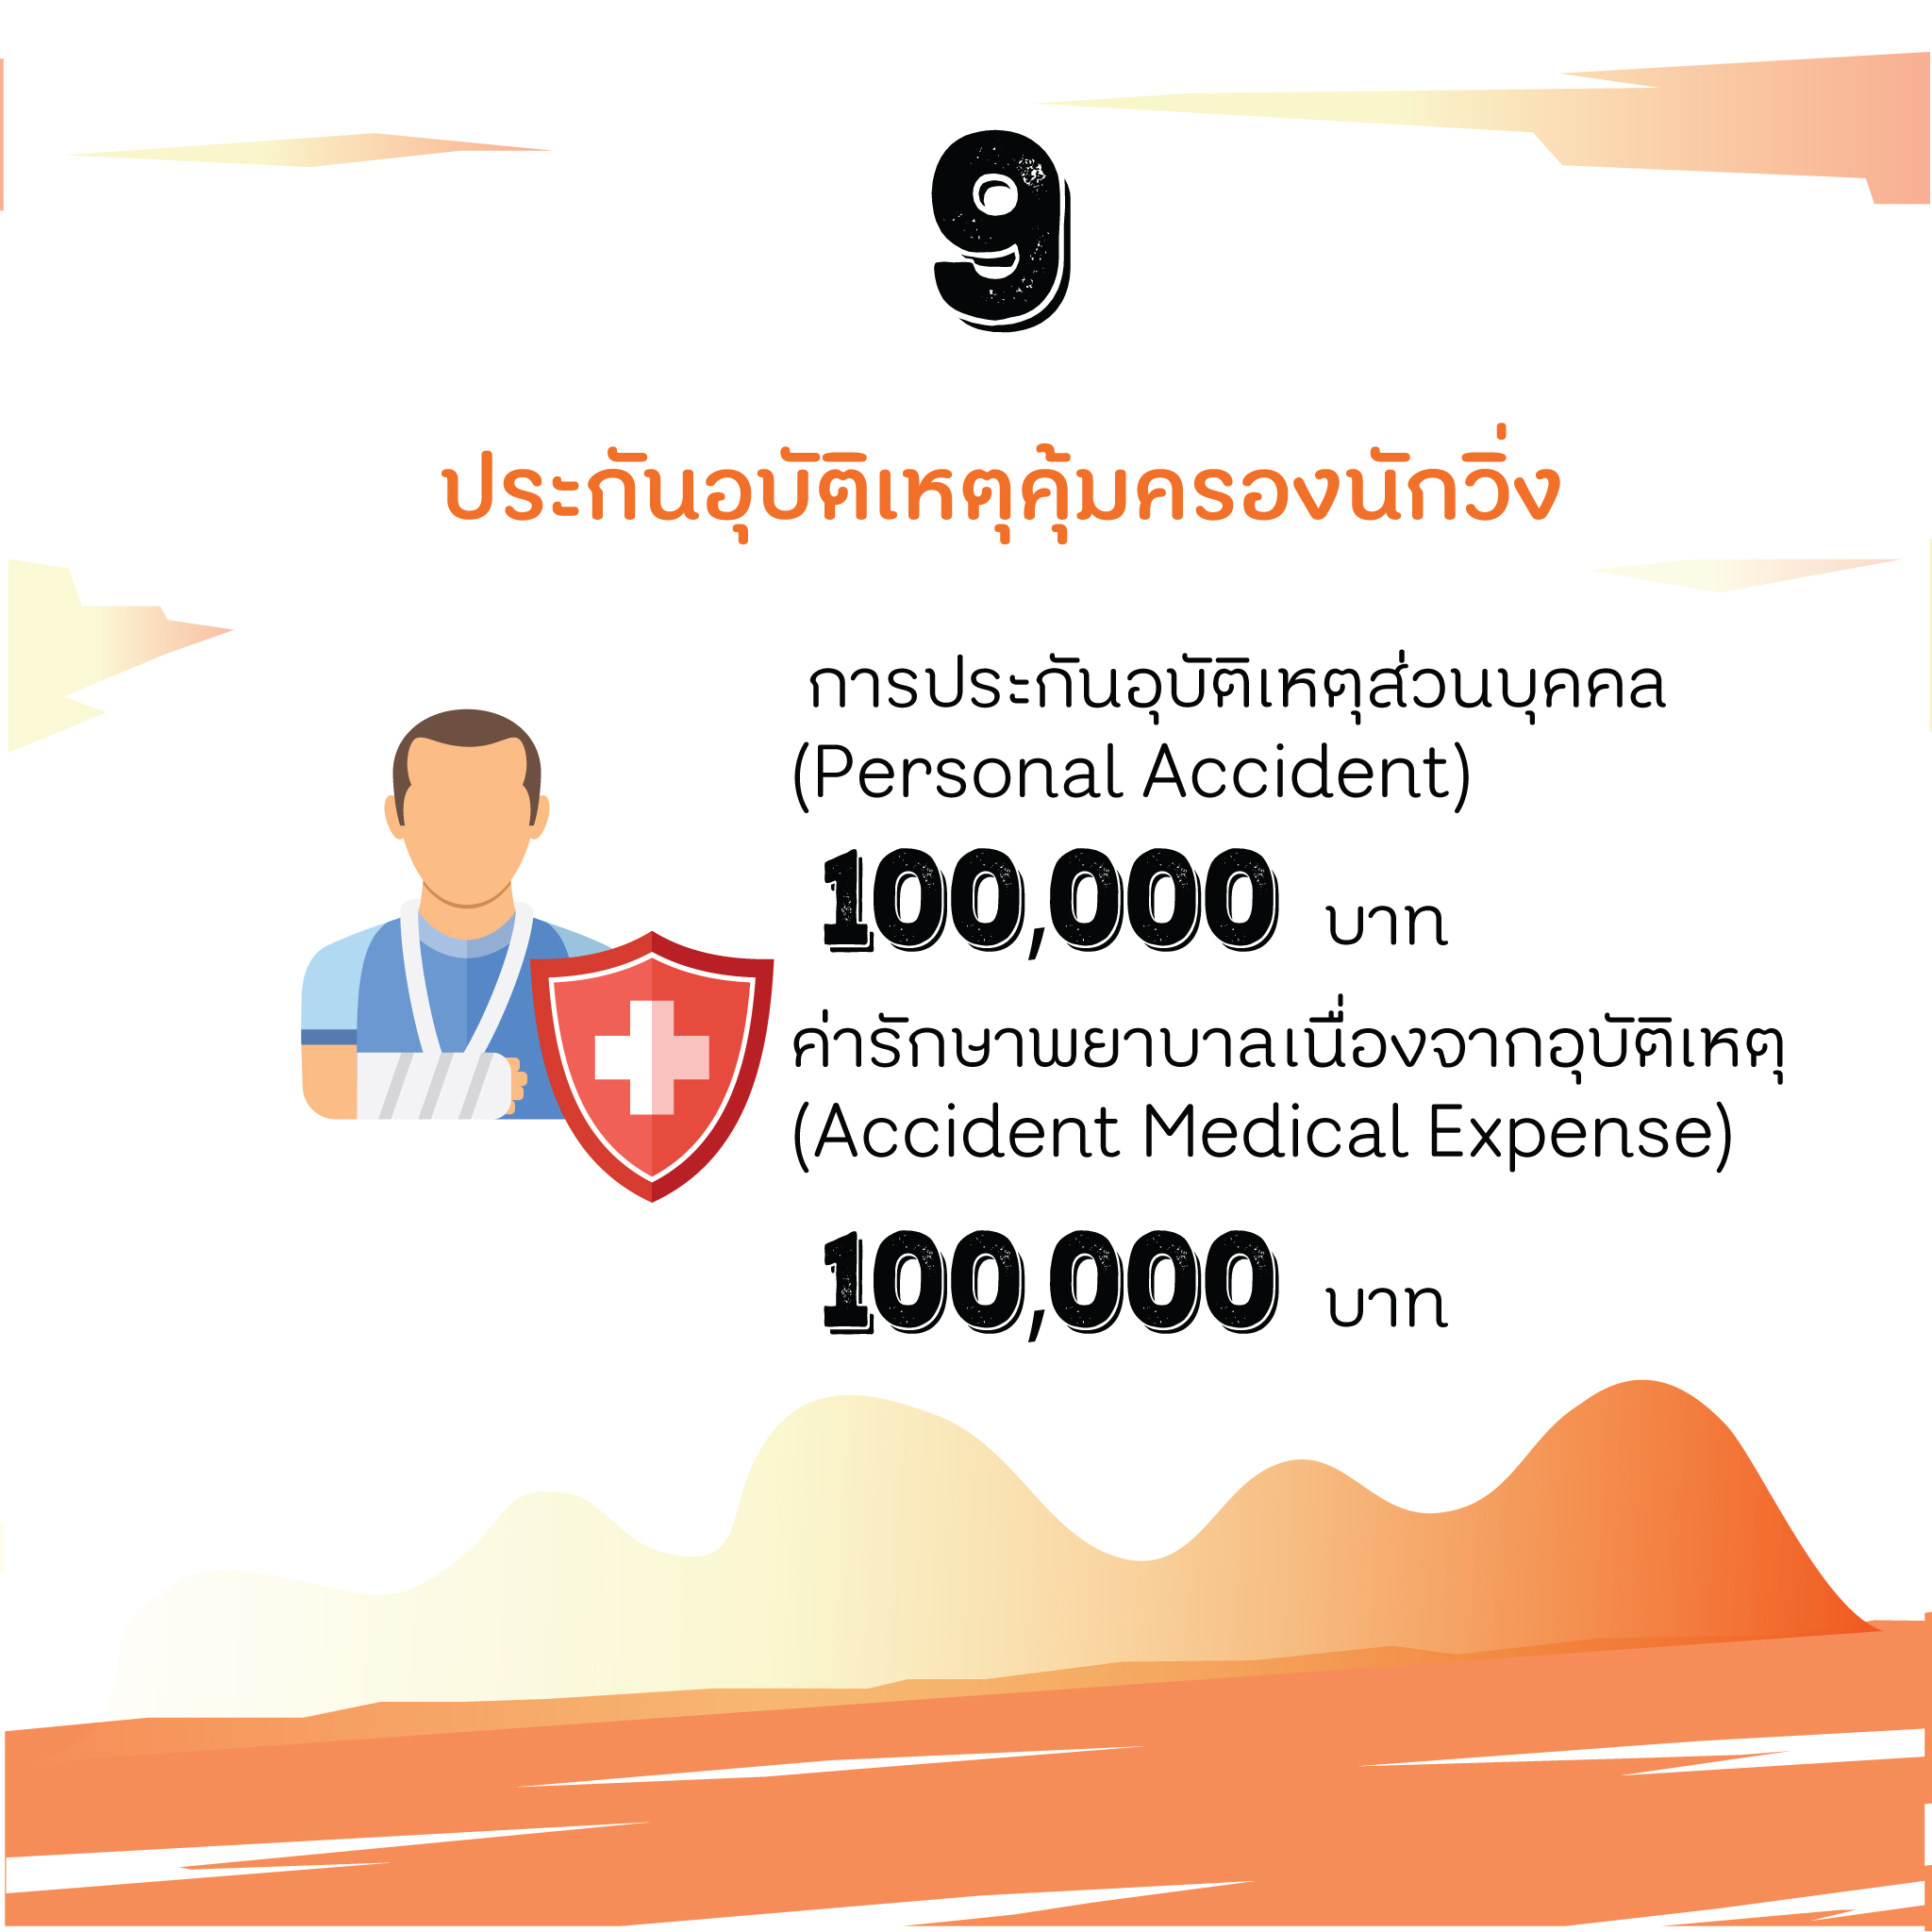 9 ข้อควรรู้ในงาน Thai Health Day Run 2017  thaihealth